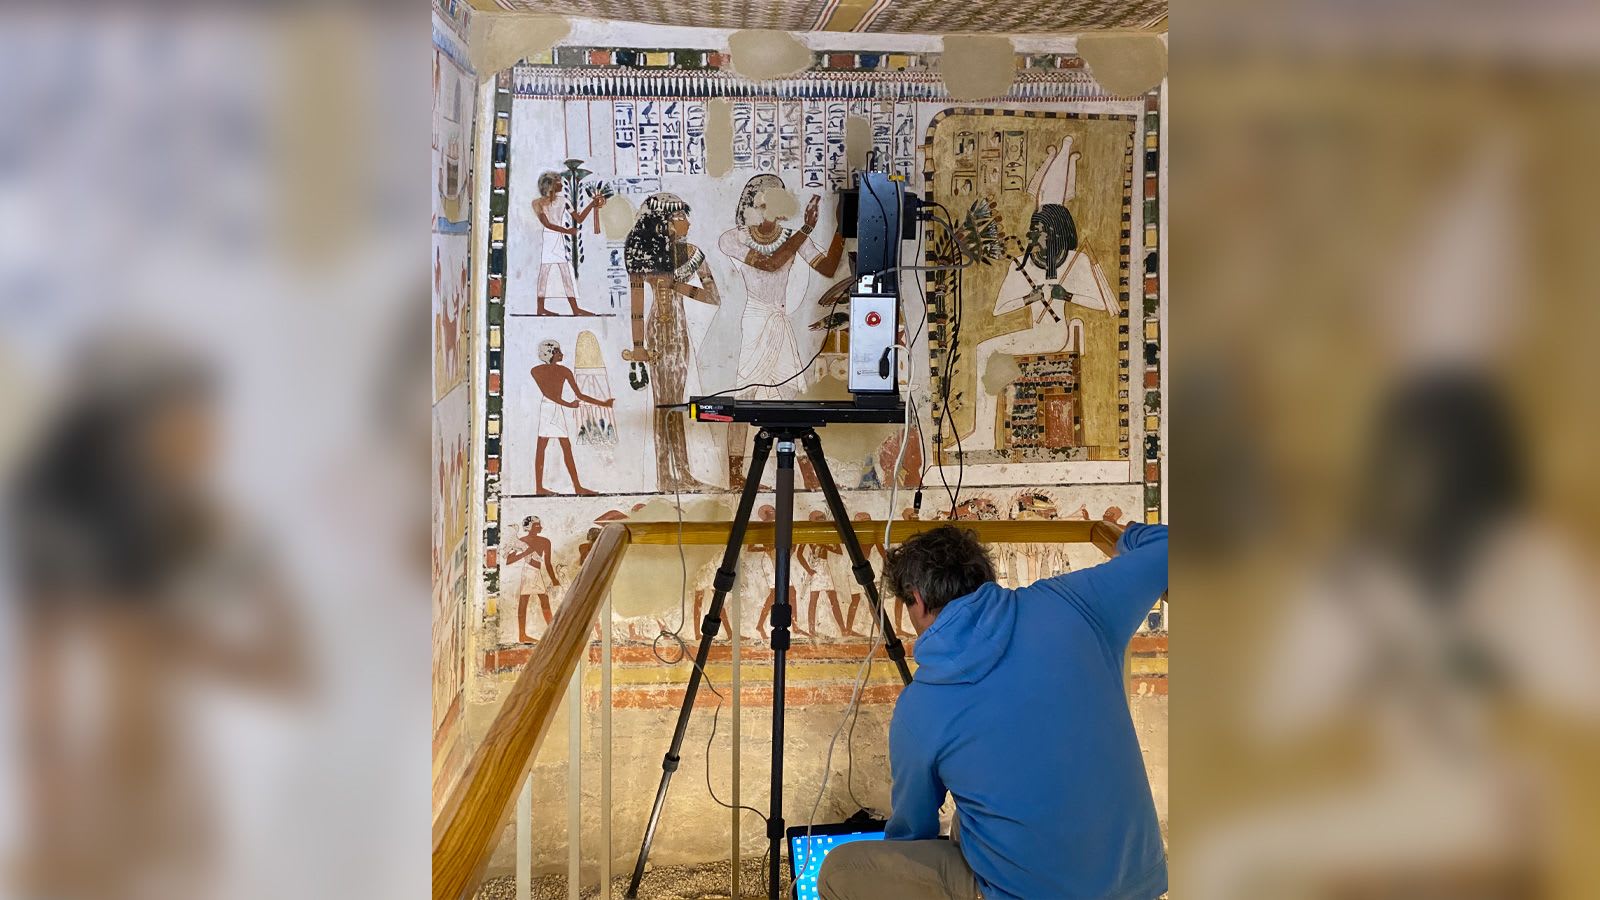 تقنية حديثة تكشف تفاصيل خفية في لوحتين مصريتين قديمتين